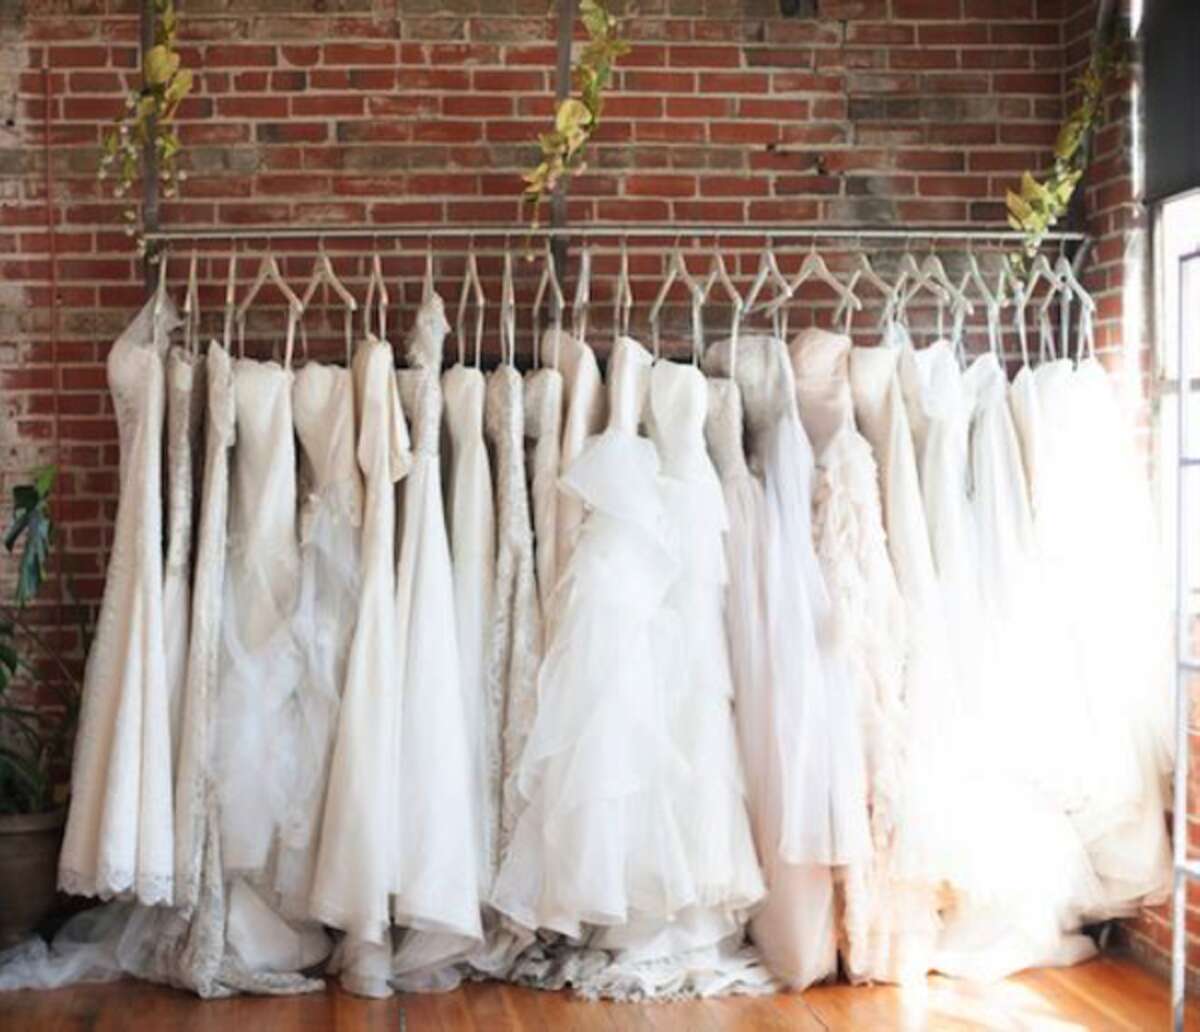 Много свадебных платьев